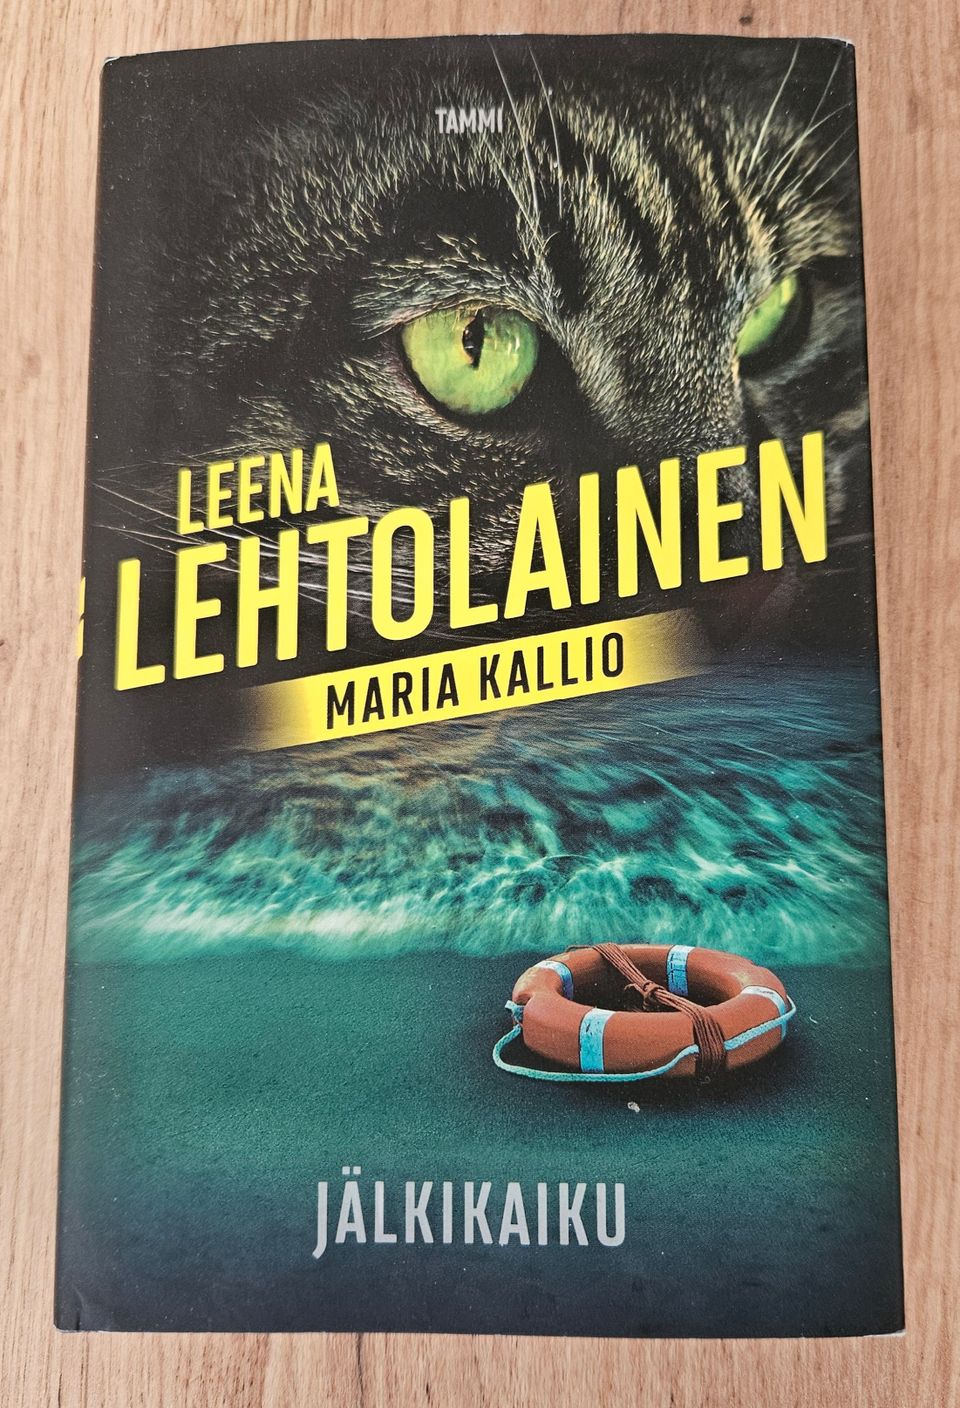 Jälkikaiku, Maria Kallio 15, Leena Lehtolainen